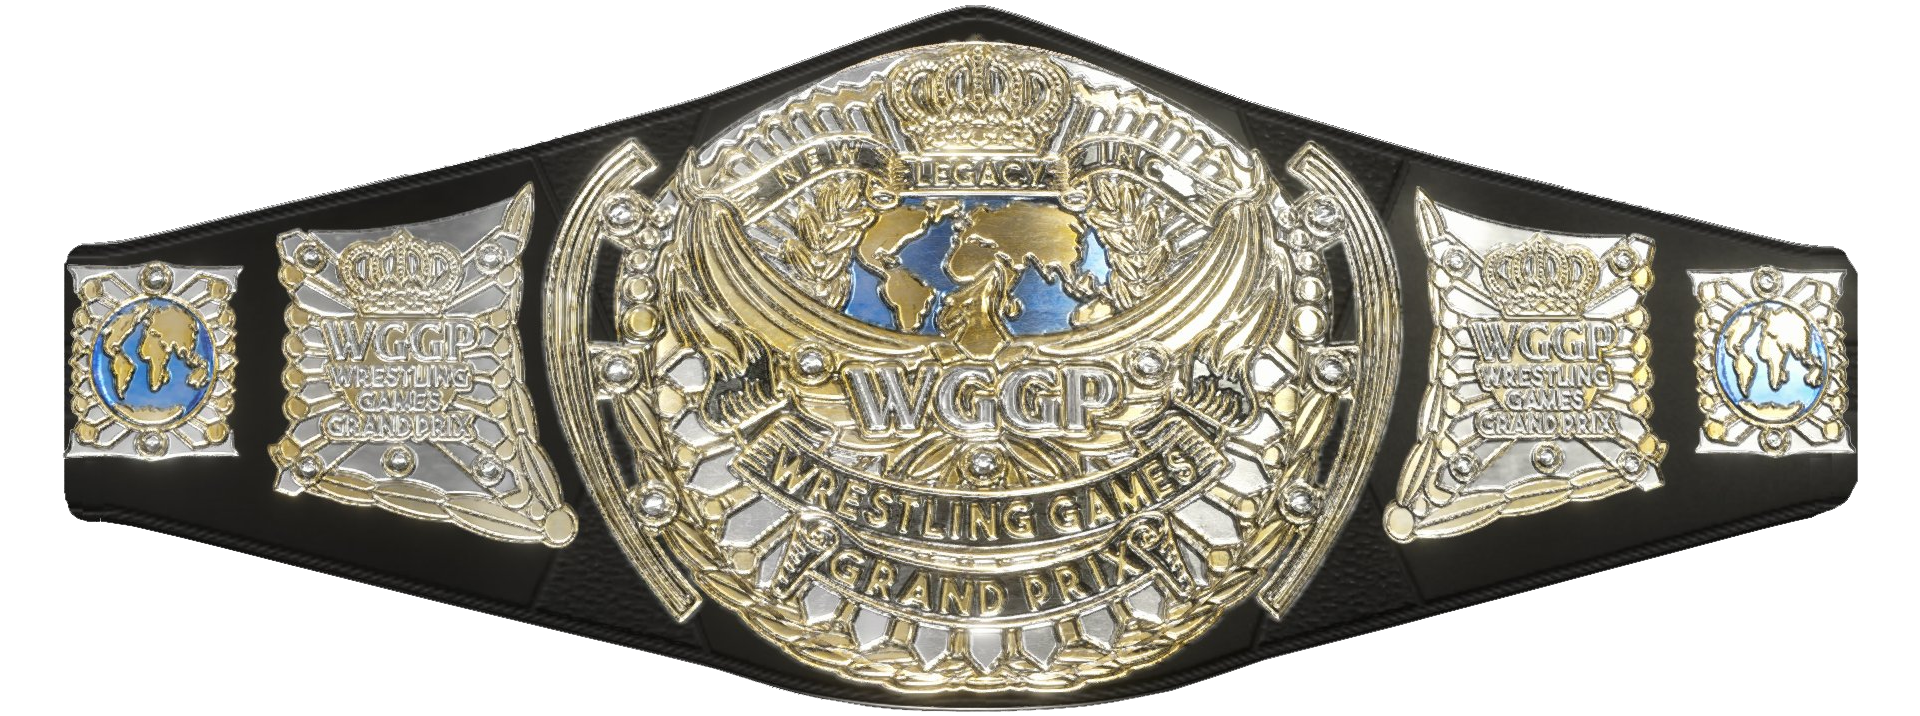 Women's World Championship (WWE) - Wikipedia